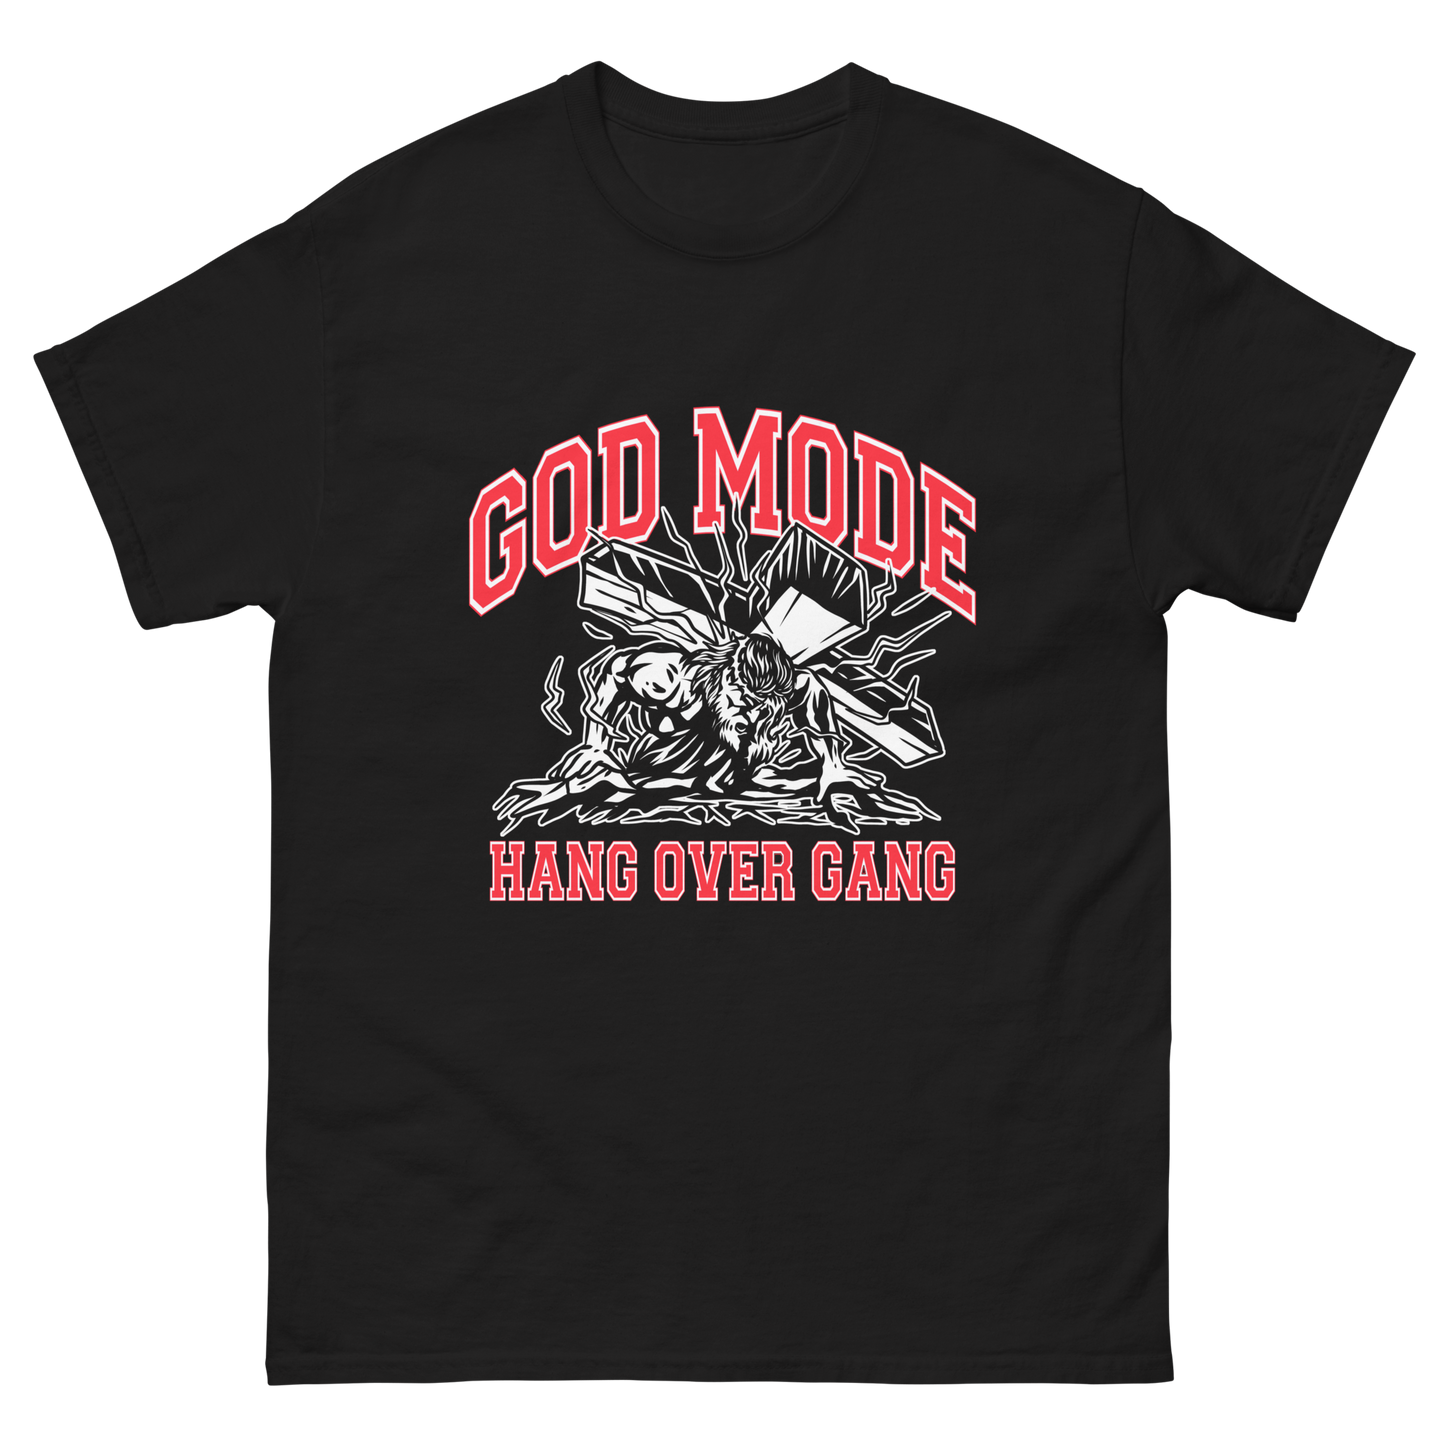 "God Mode" T-Shirt